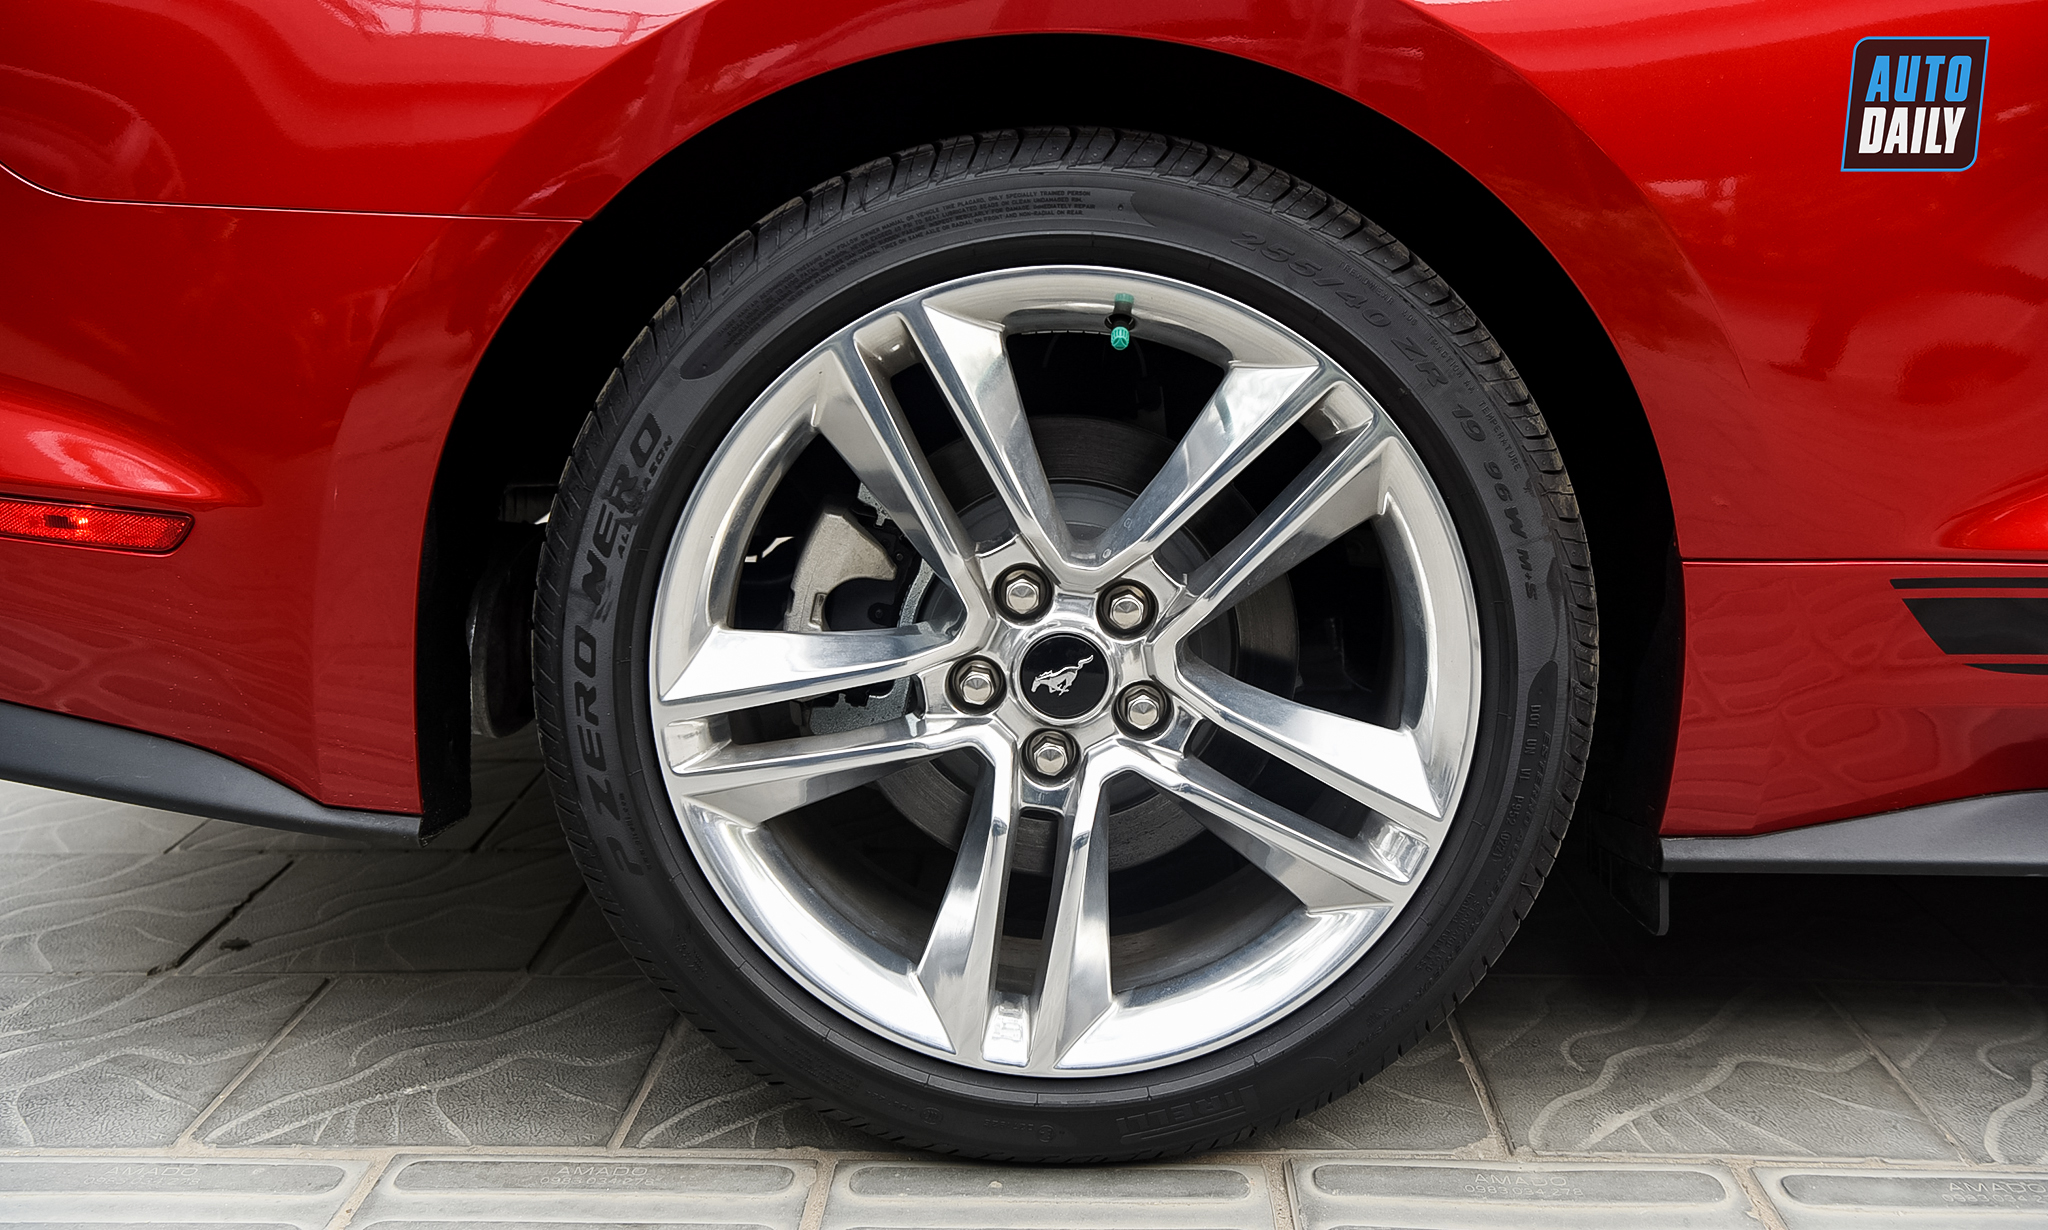 Chi tiết Ford Mustang Premium 2021 giá hơn 3 tỷ tại Việt Nam 13.jpg